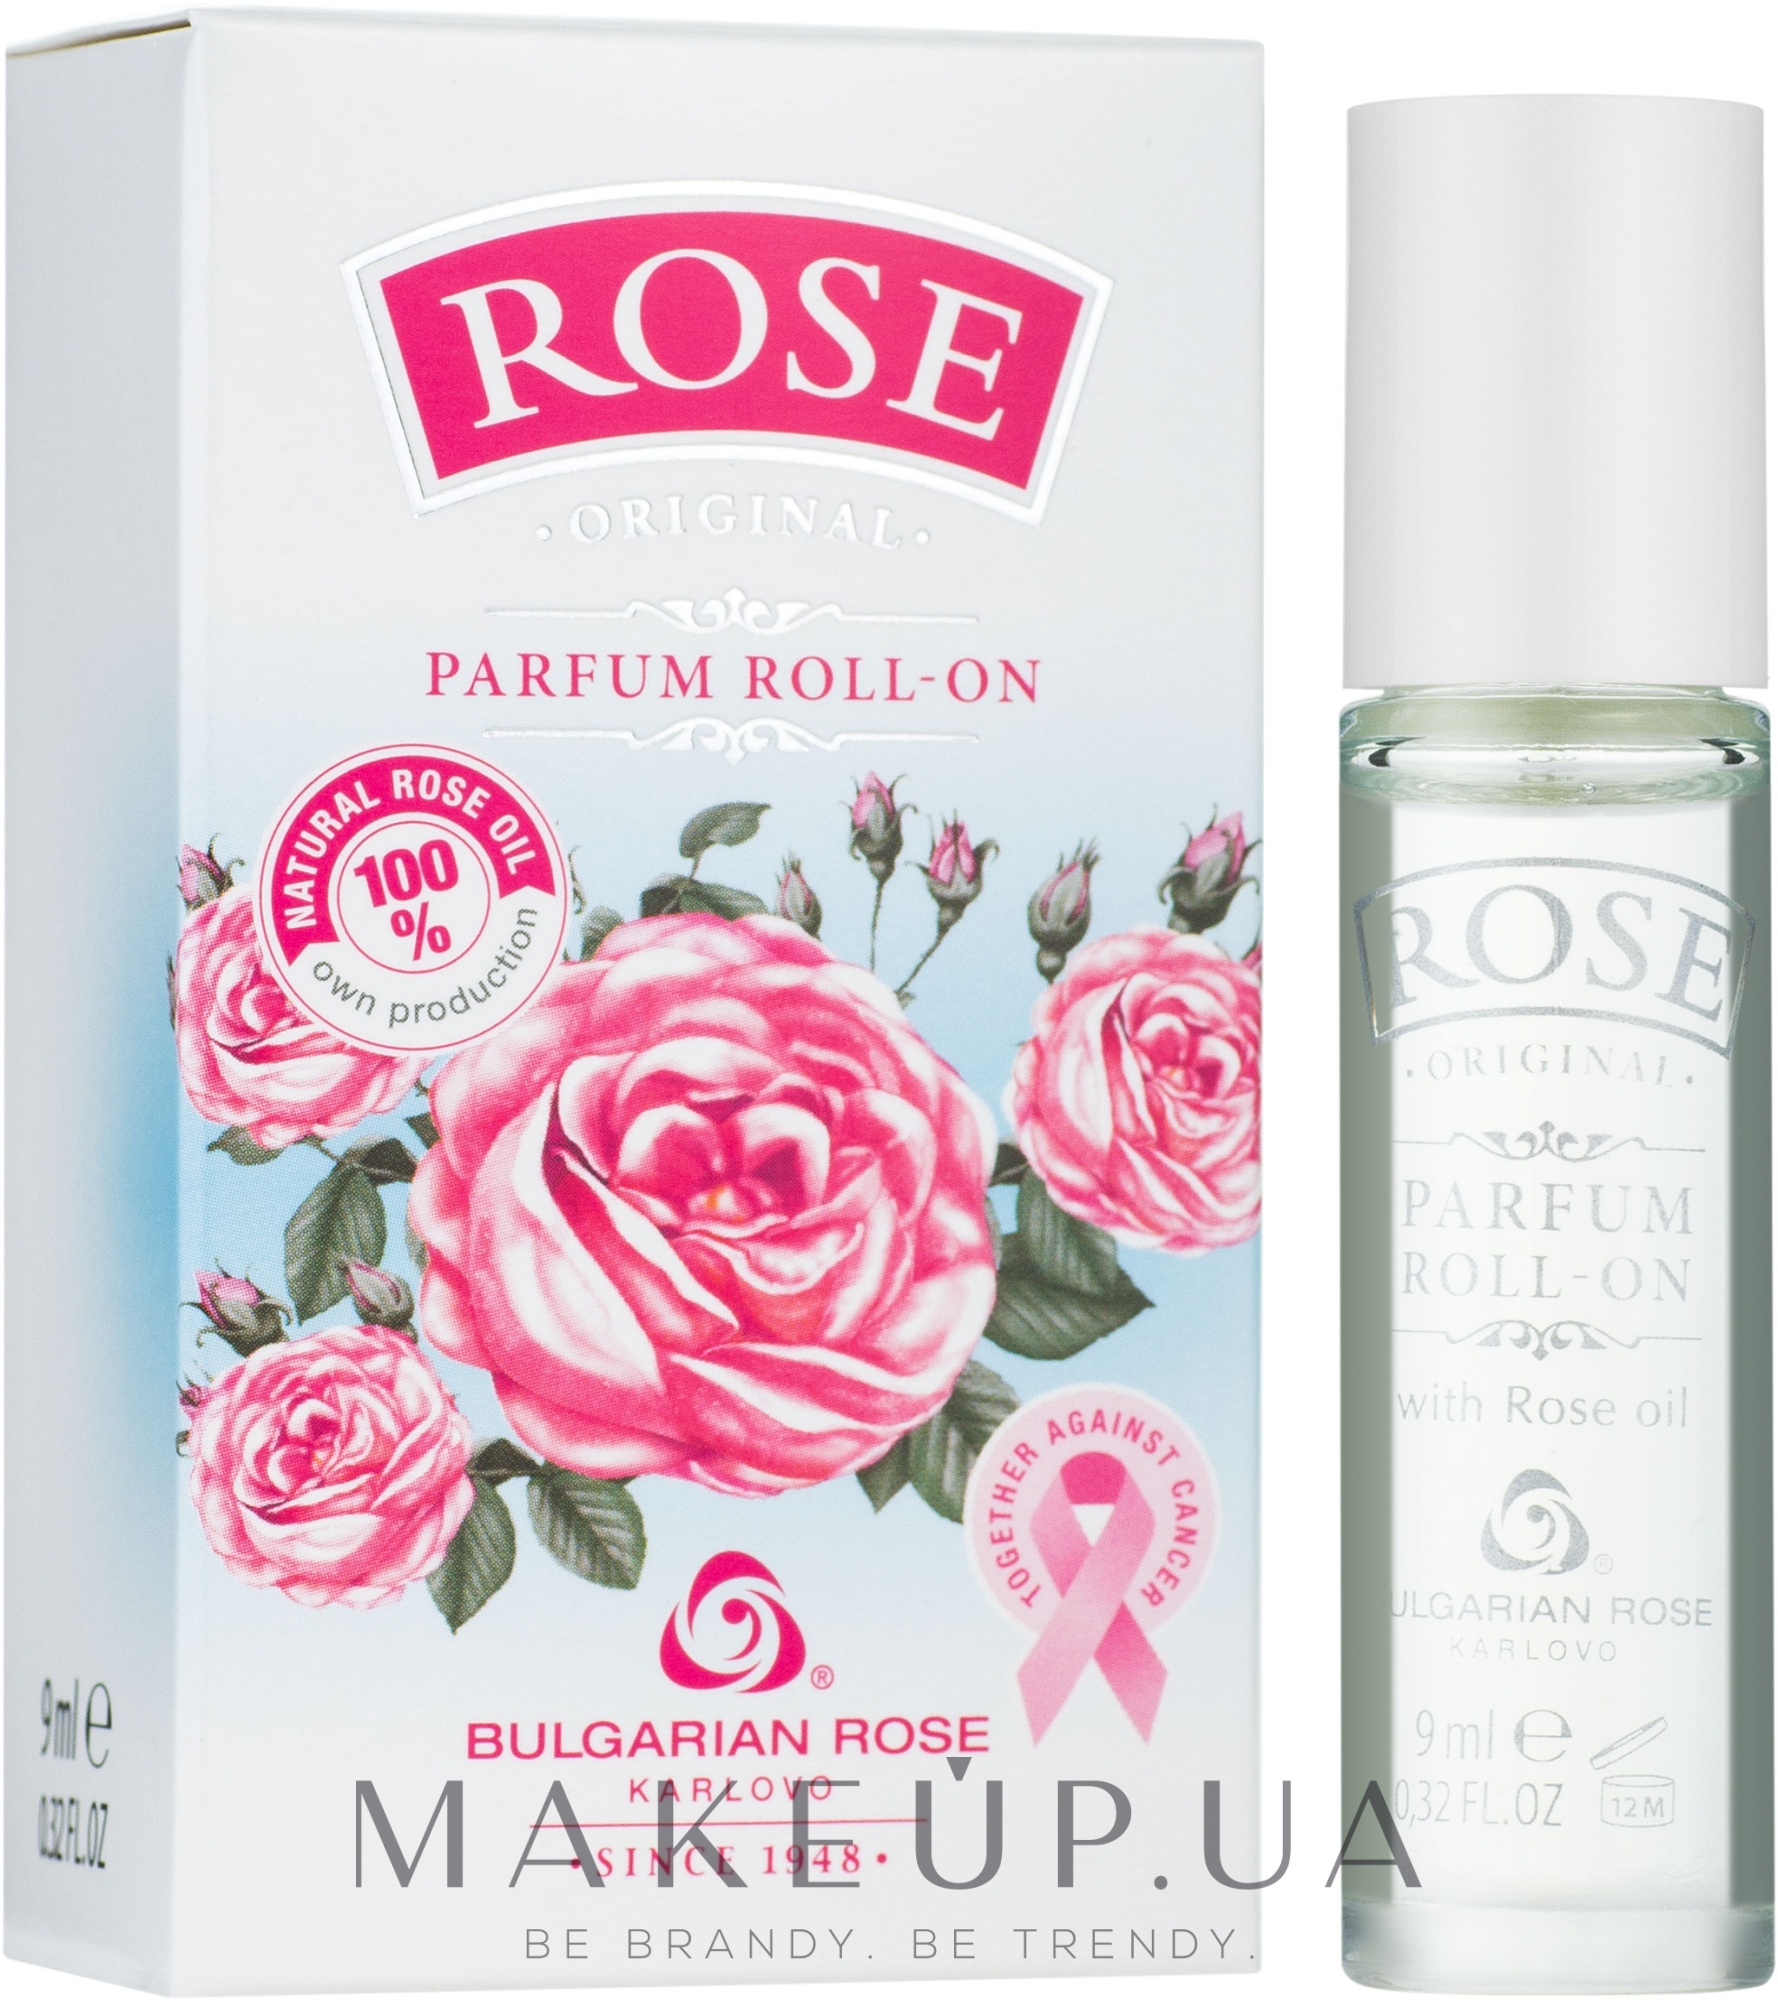 Bulgarska Rosa Rose - Роликові парфуми  — фото 9ml